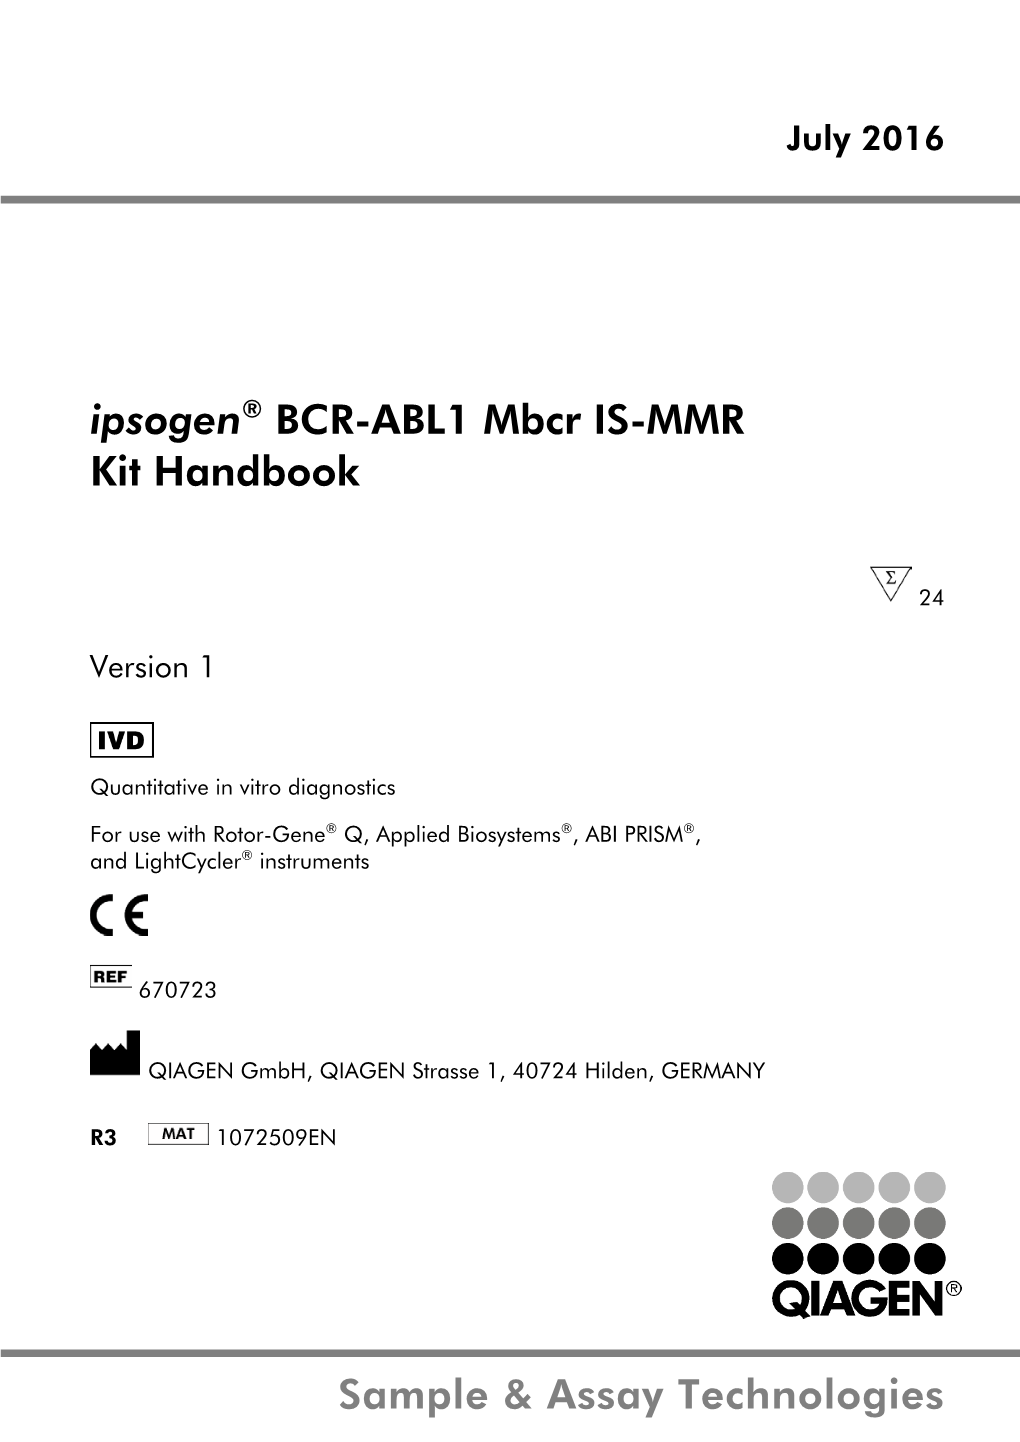 Ipsogen® BCR-ABL1 Mbcr Kit Handbook